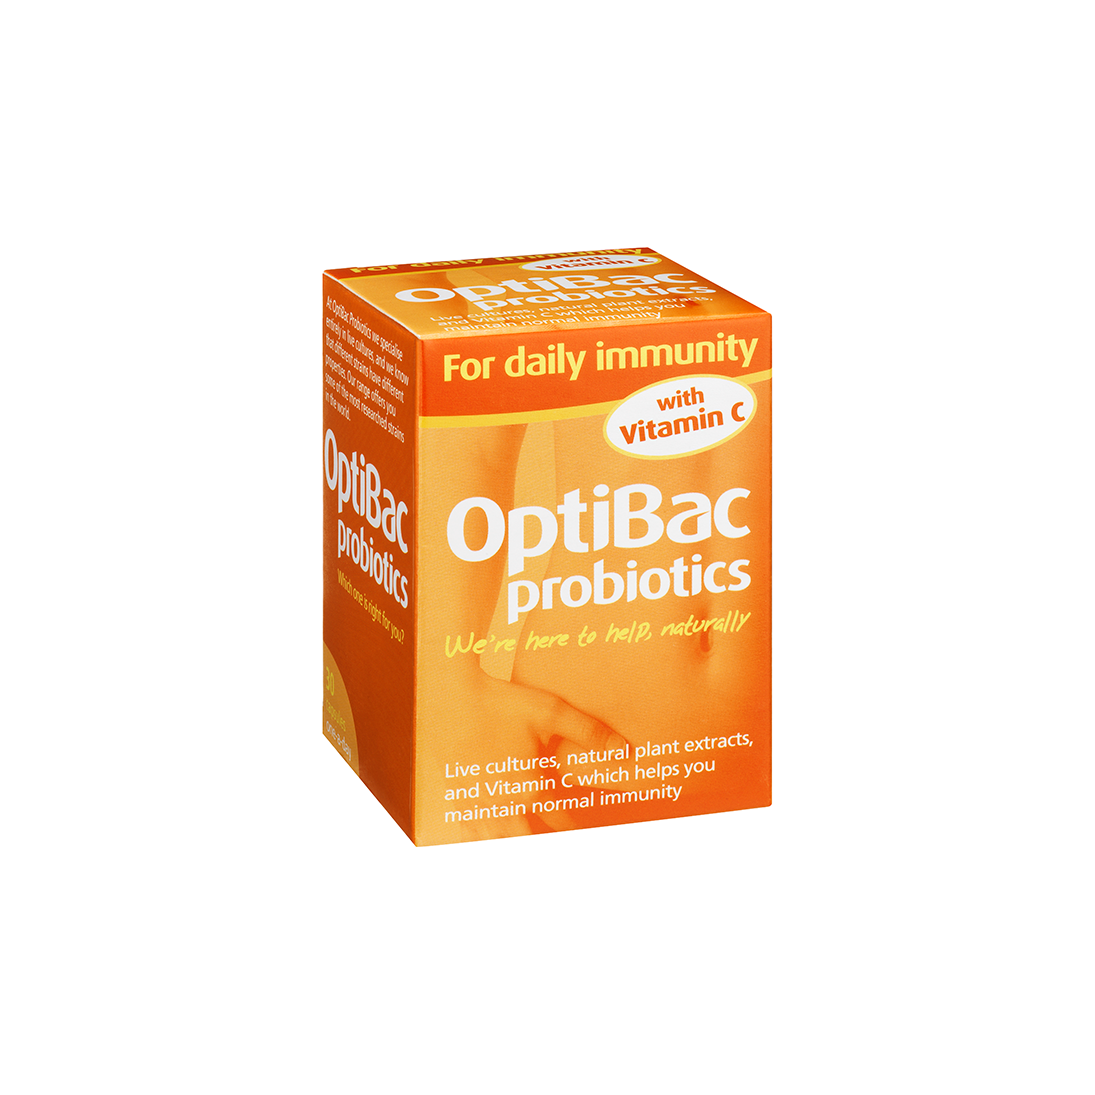 OptiBac Probiotics For Daily Immunity Capsules 30's